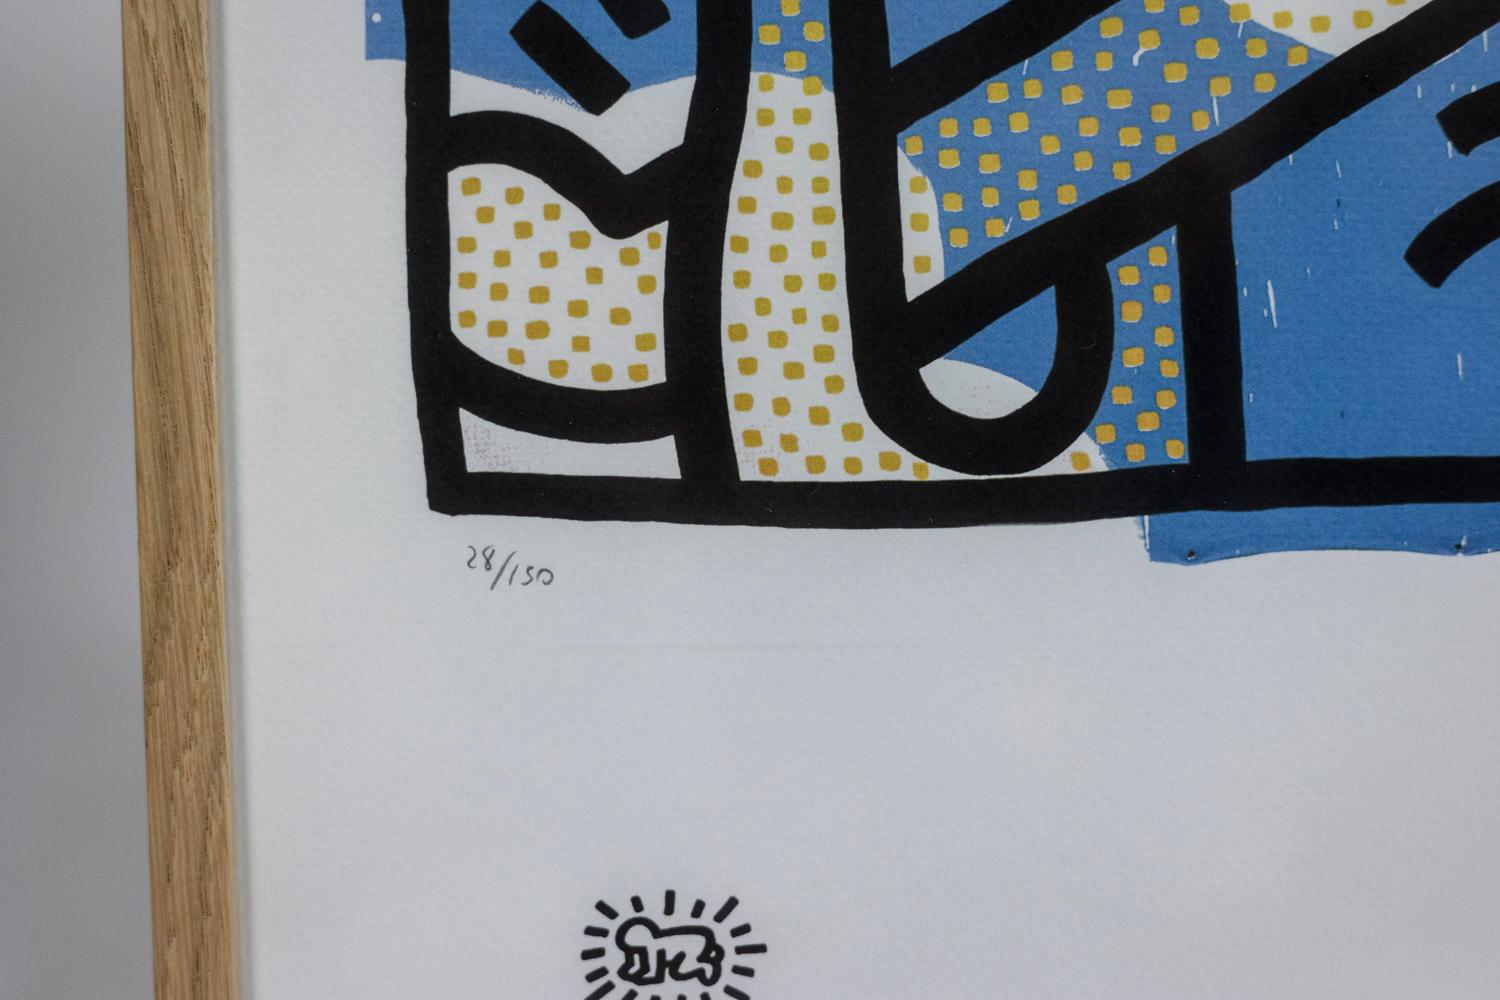 Keith Haring, signé et numéroté.

Sérigraphie abstraite, suggérant des figures schématiques, dans des tons de bleu, blanc, jaune et noir dans son cadre en chêne blond.

Numéroté 28/150.

Œuvre américaine réalisée dans les années 1990.

Dimensions :